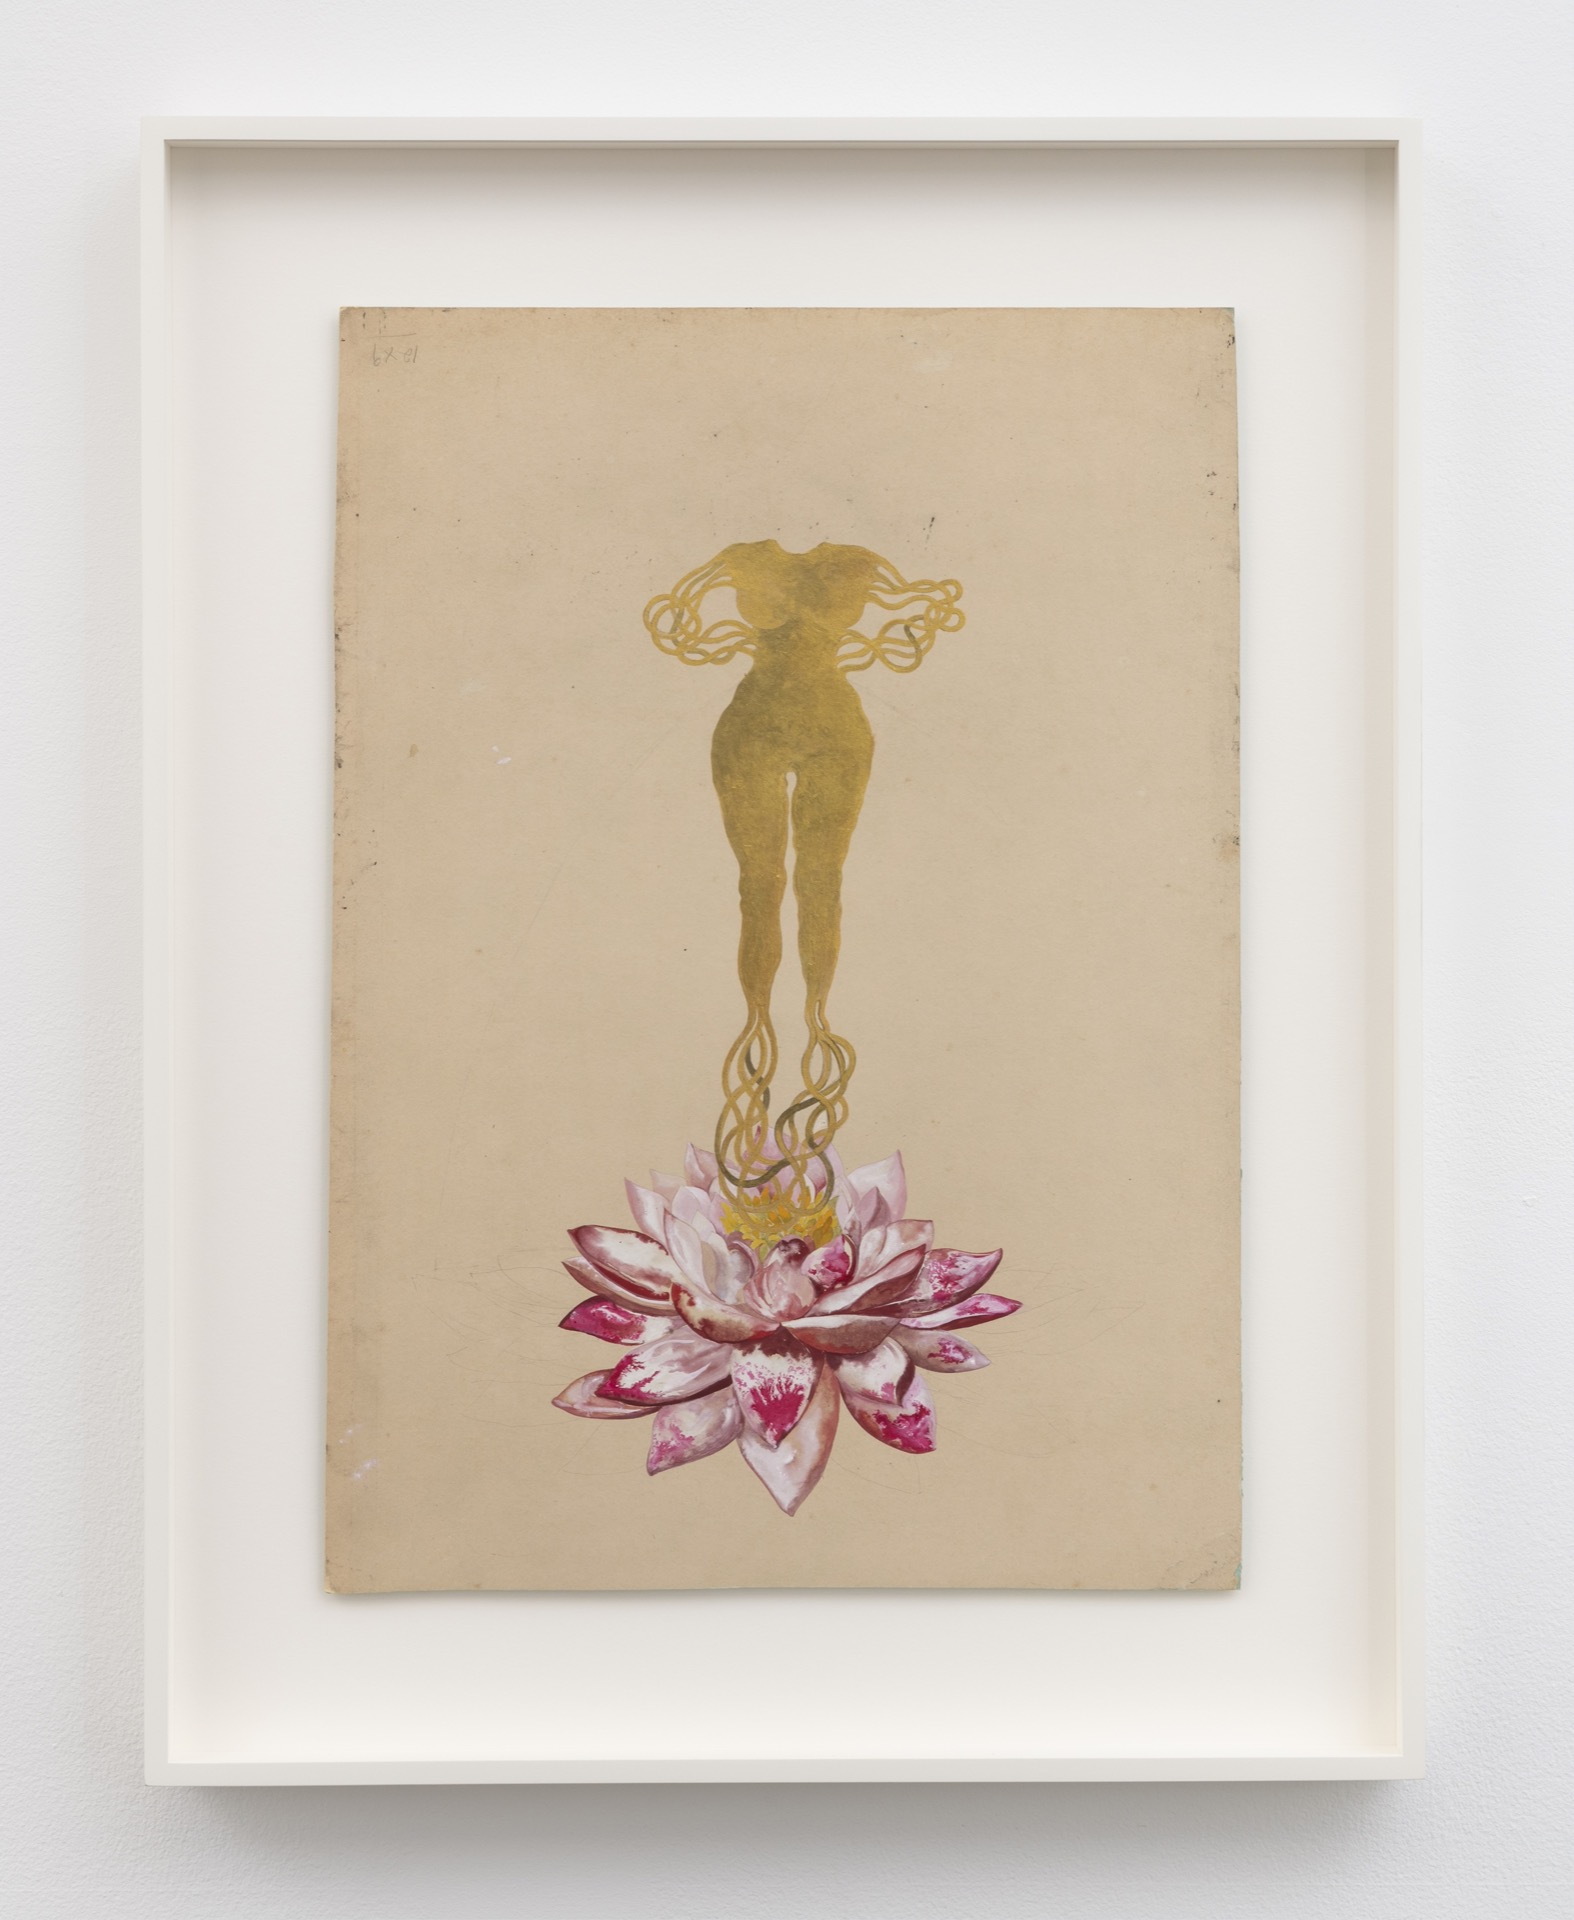 Figura femminile dorata, acefala, con tralci in luogo di mani e piedi, che si erge da bocciolo di loto rosa in fiore.